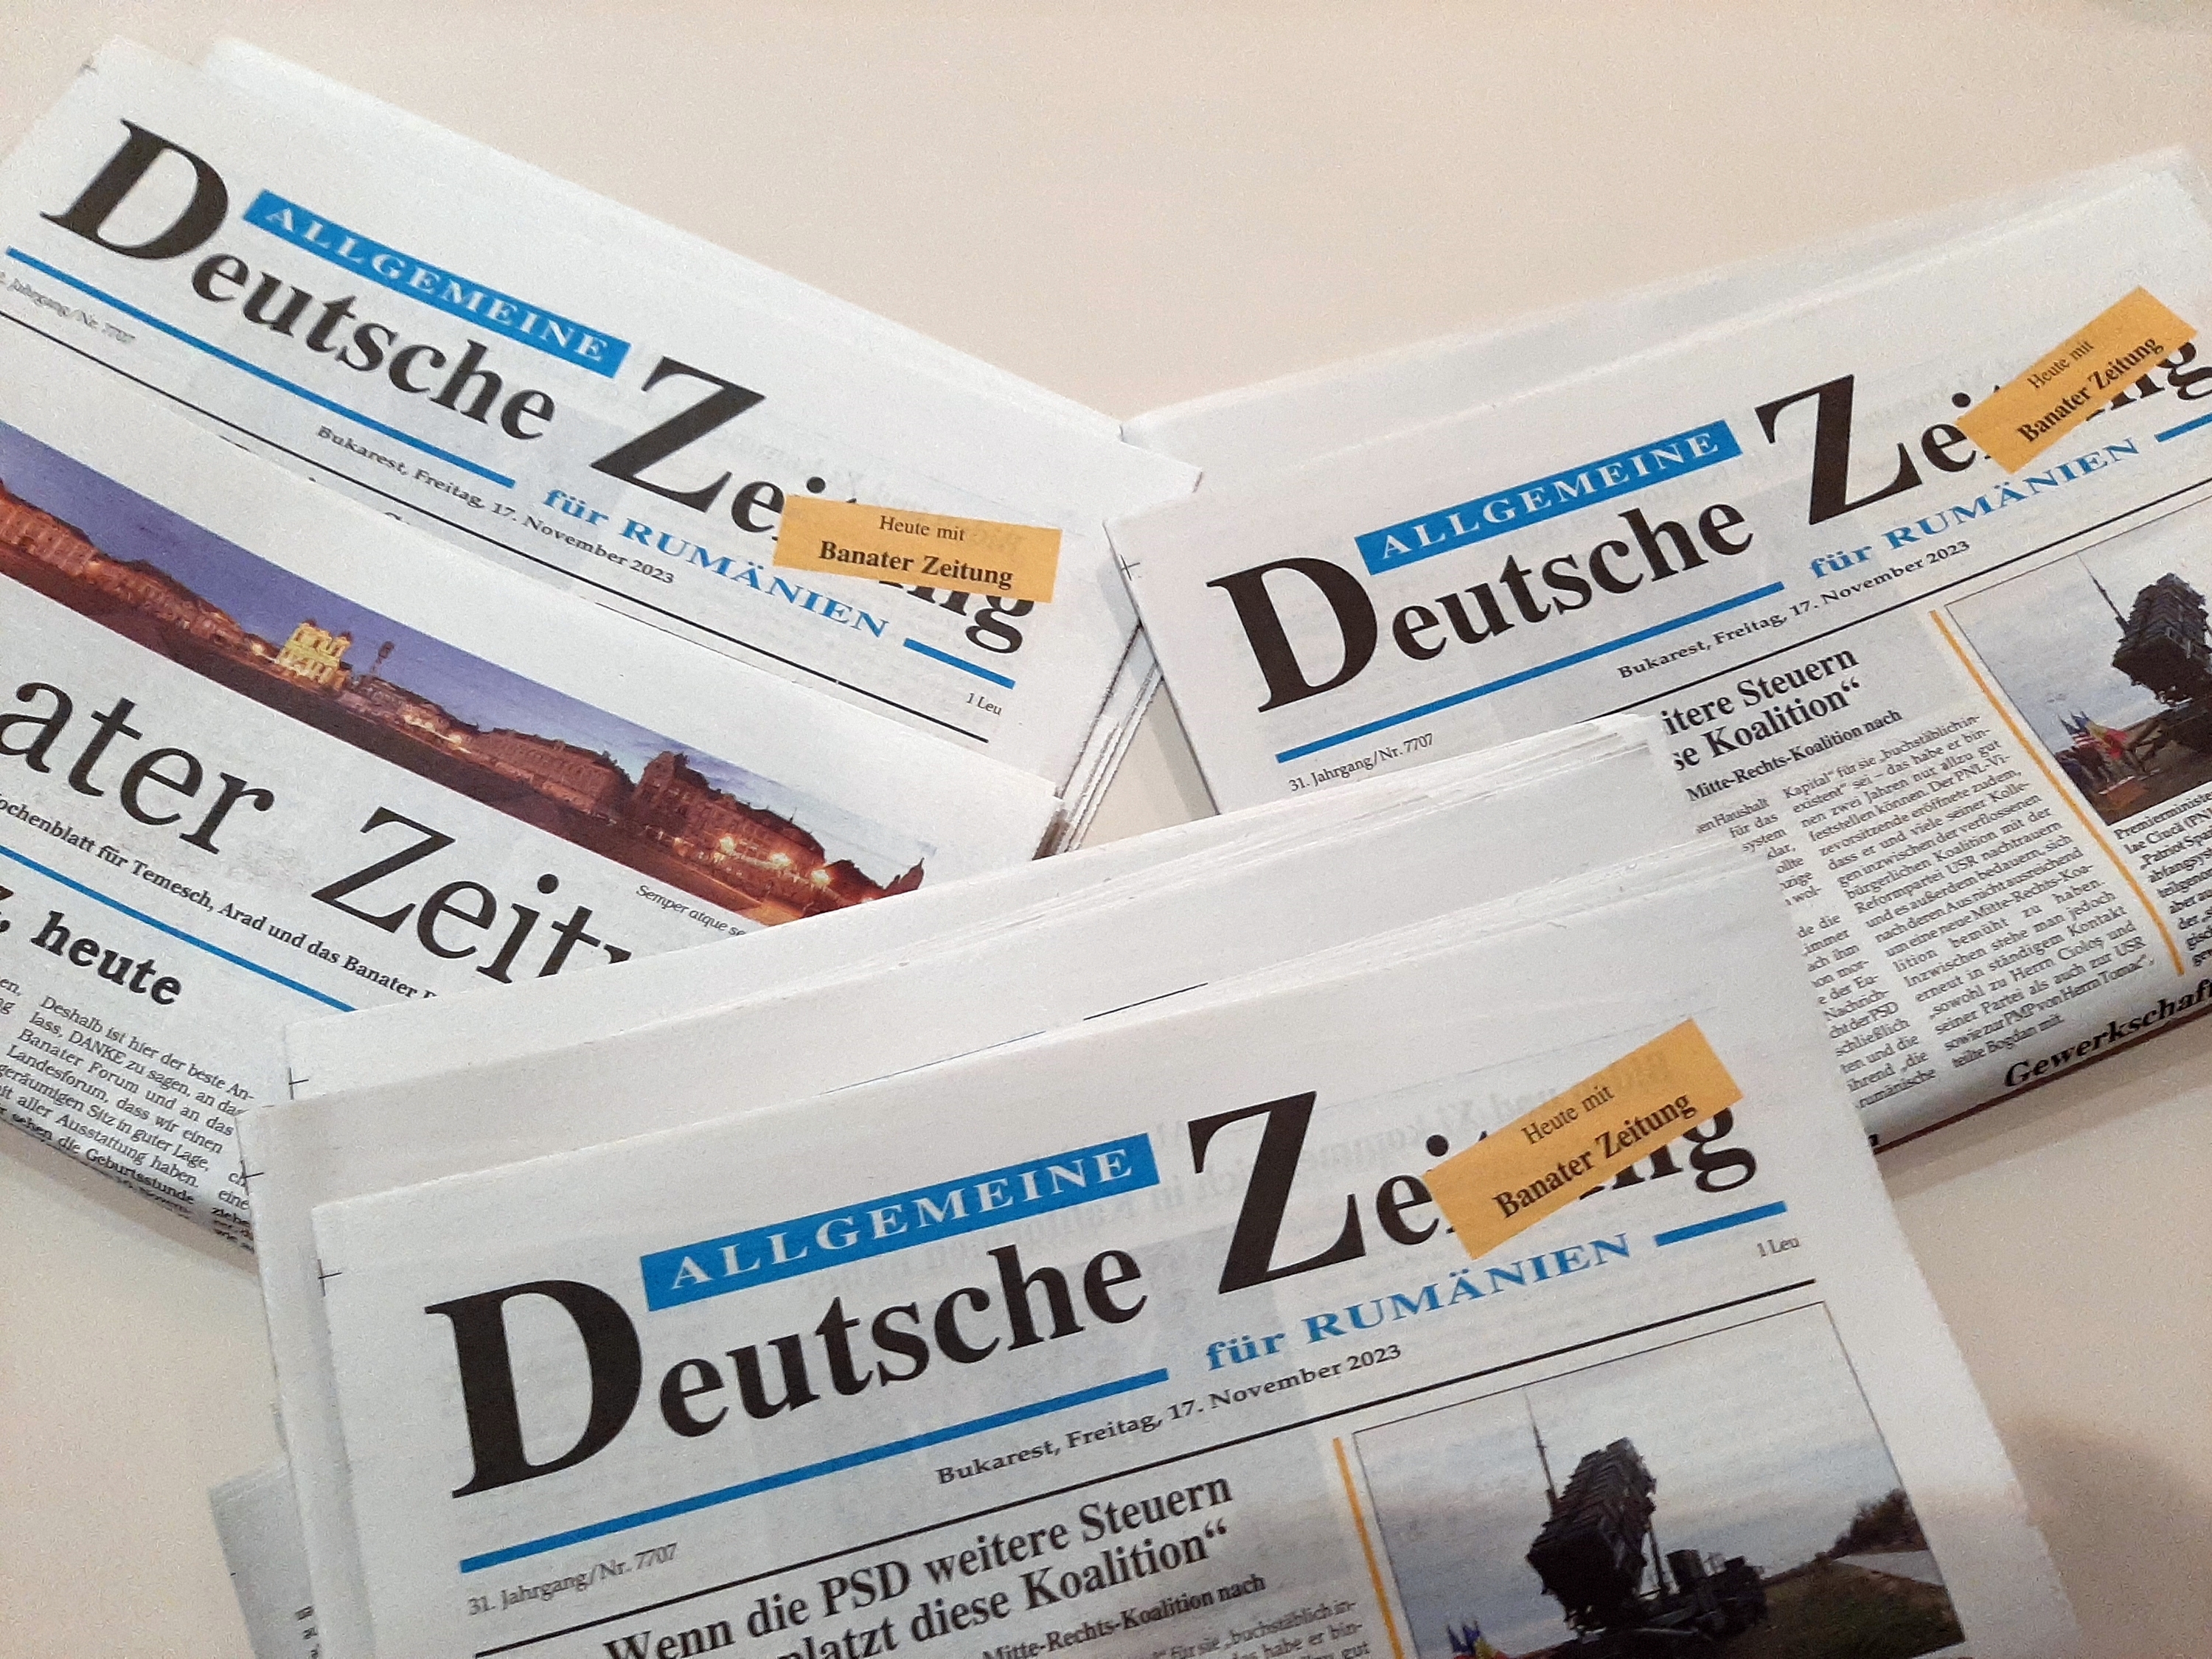 A Banater Zeitung jubileumi különkiadása, az ADZ mellékleteként (Pataki-fotó)